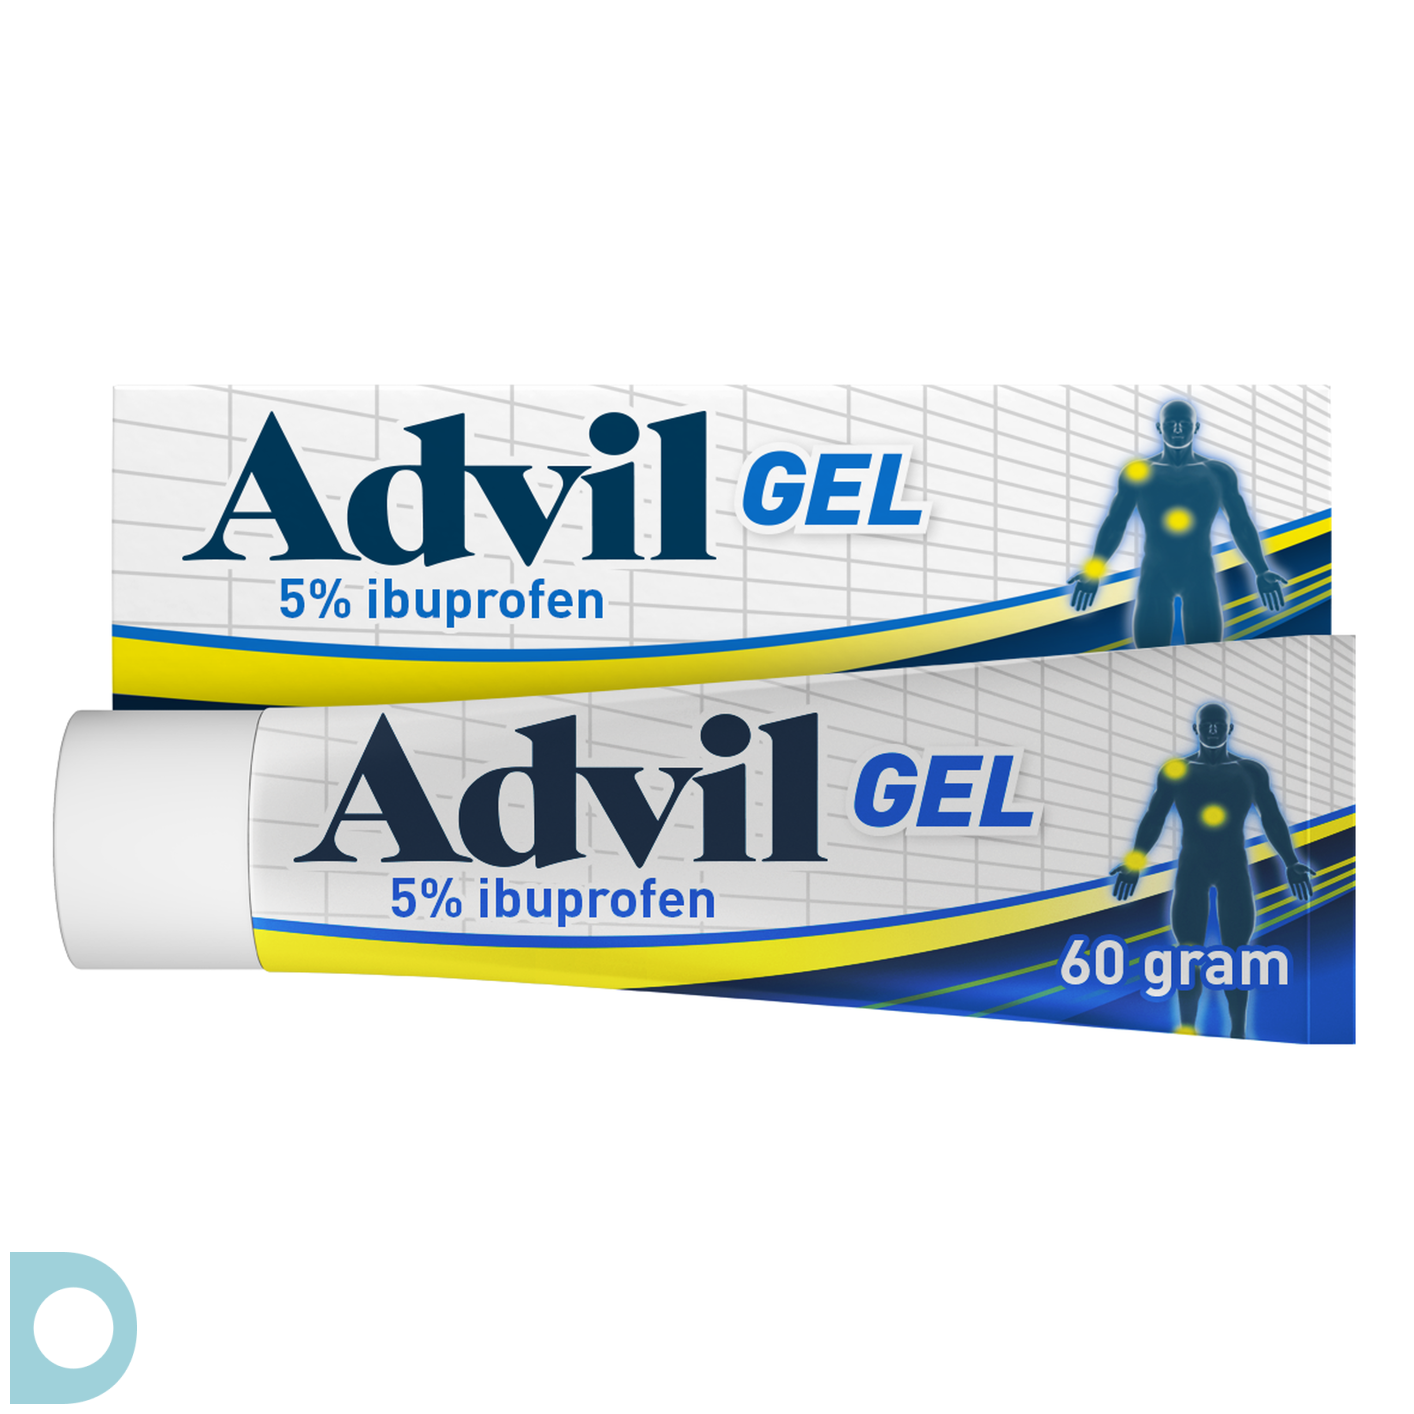 Advil Gel voor soepele kopen bij Online